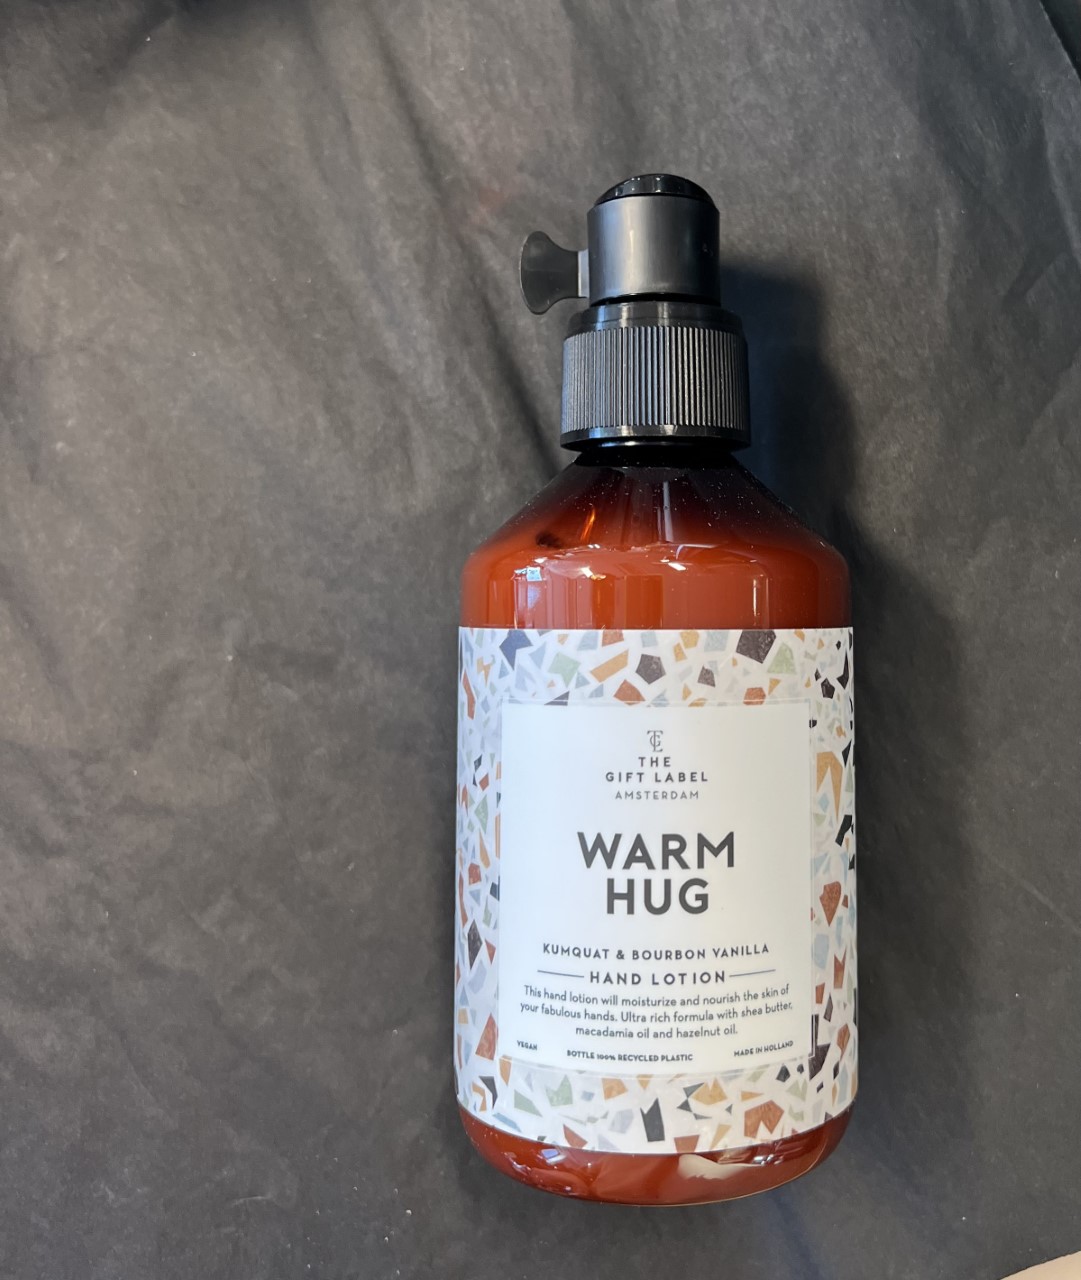 GiftLabel Hand lotion "Warm hug"